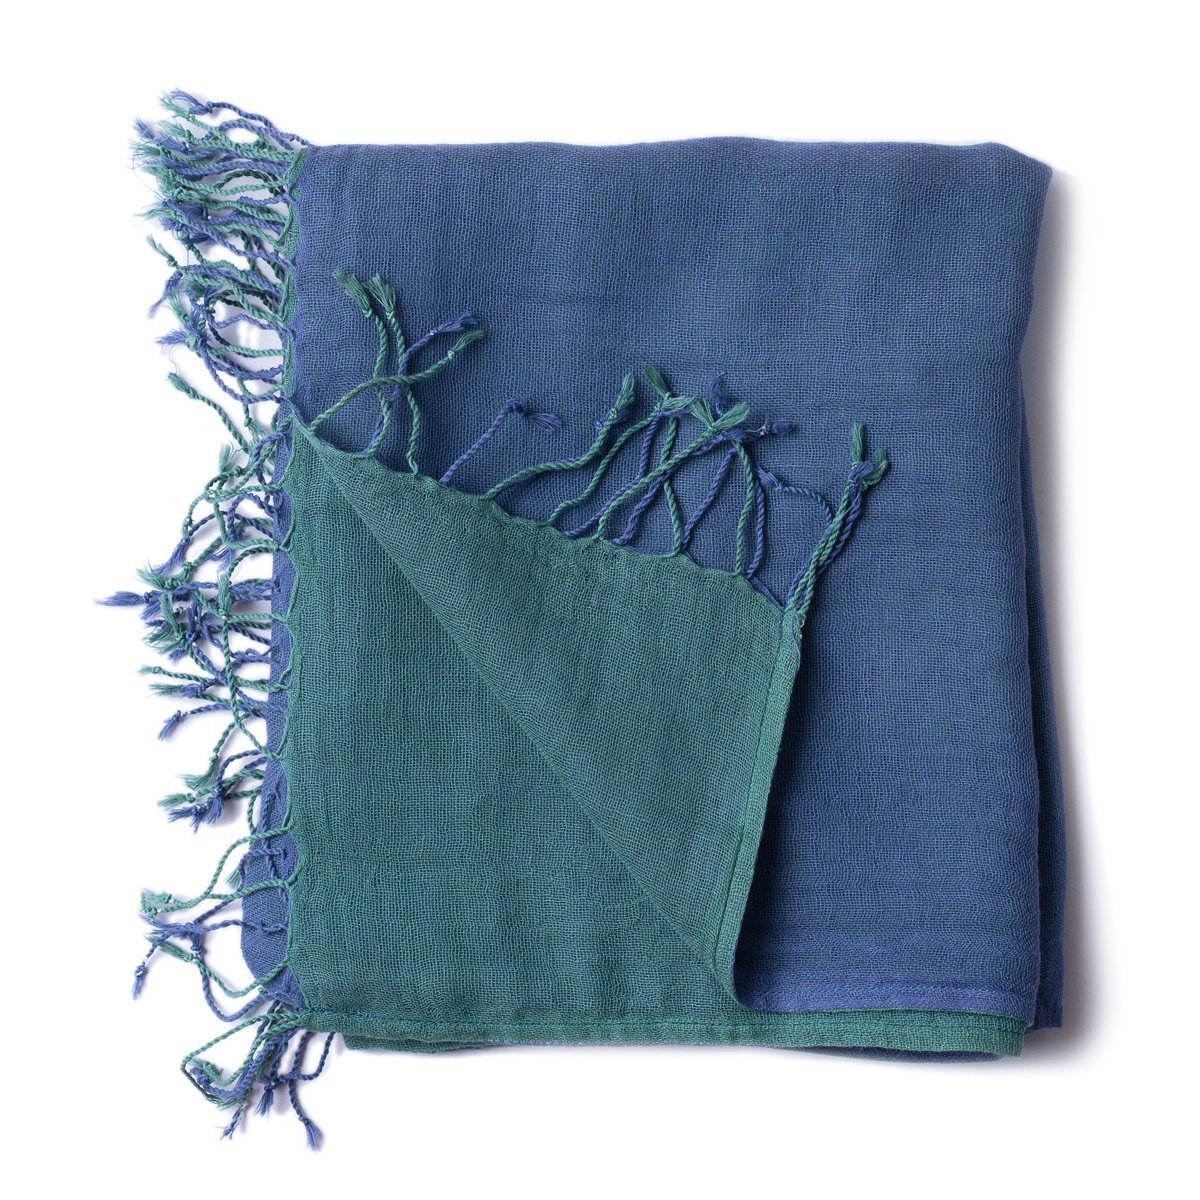 PANASIAM Halstuch elegantes Schultertuch zweifarbig auch als Schal oder Stola tragbar, in schönen farbigen Designs mit kleinen Fransen aus Baumwolle blau grün